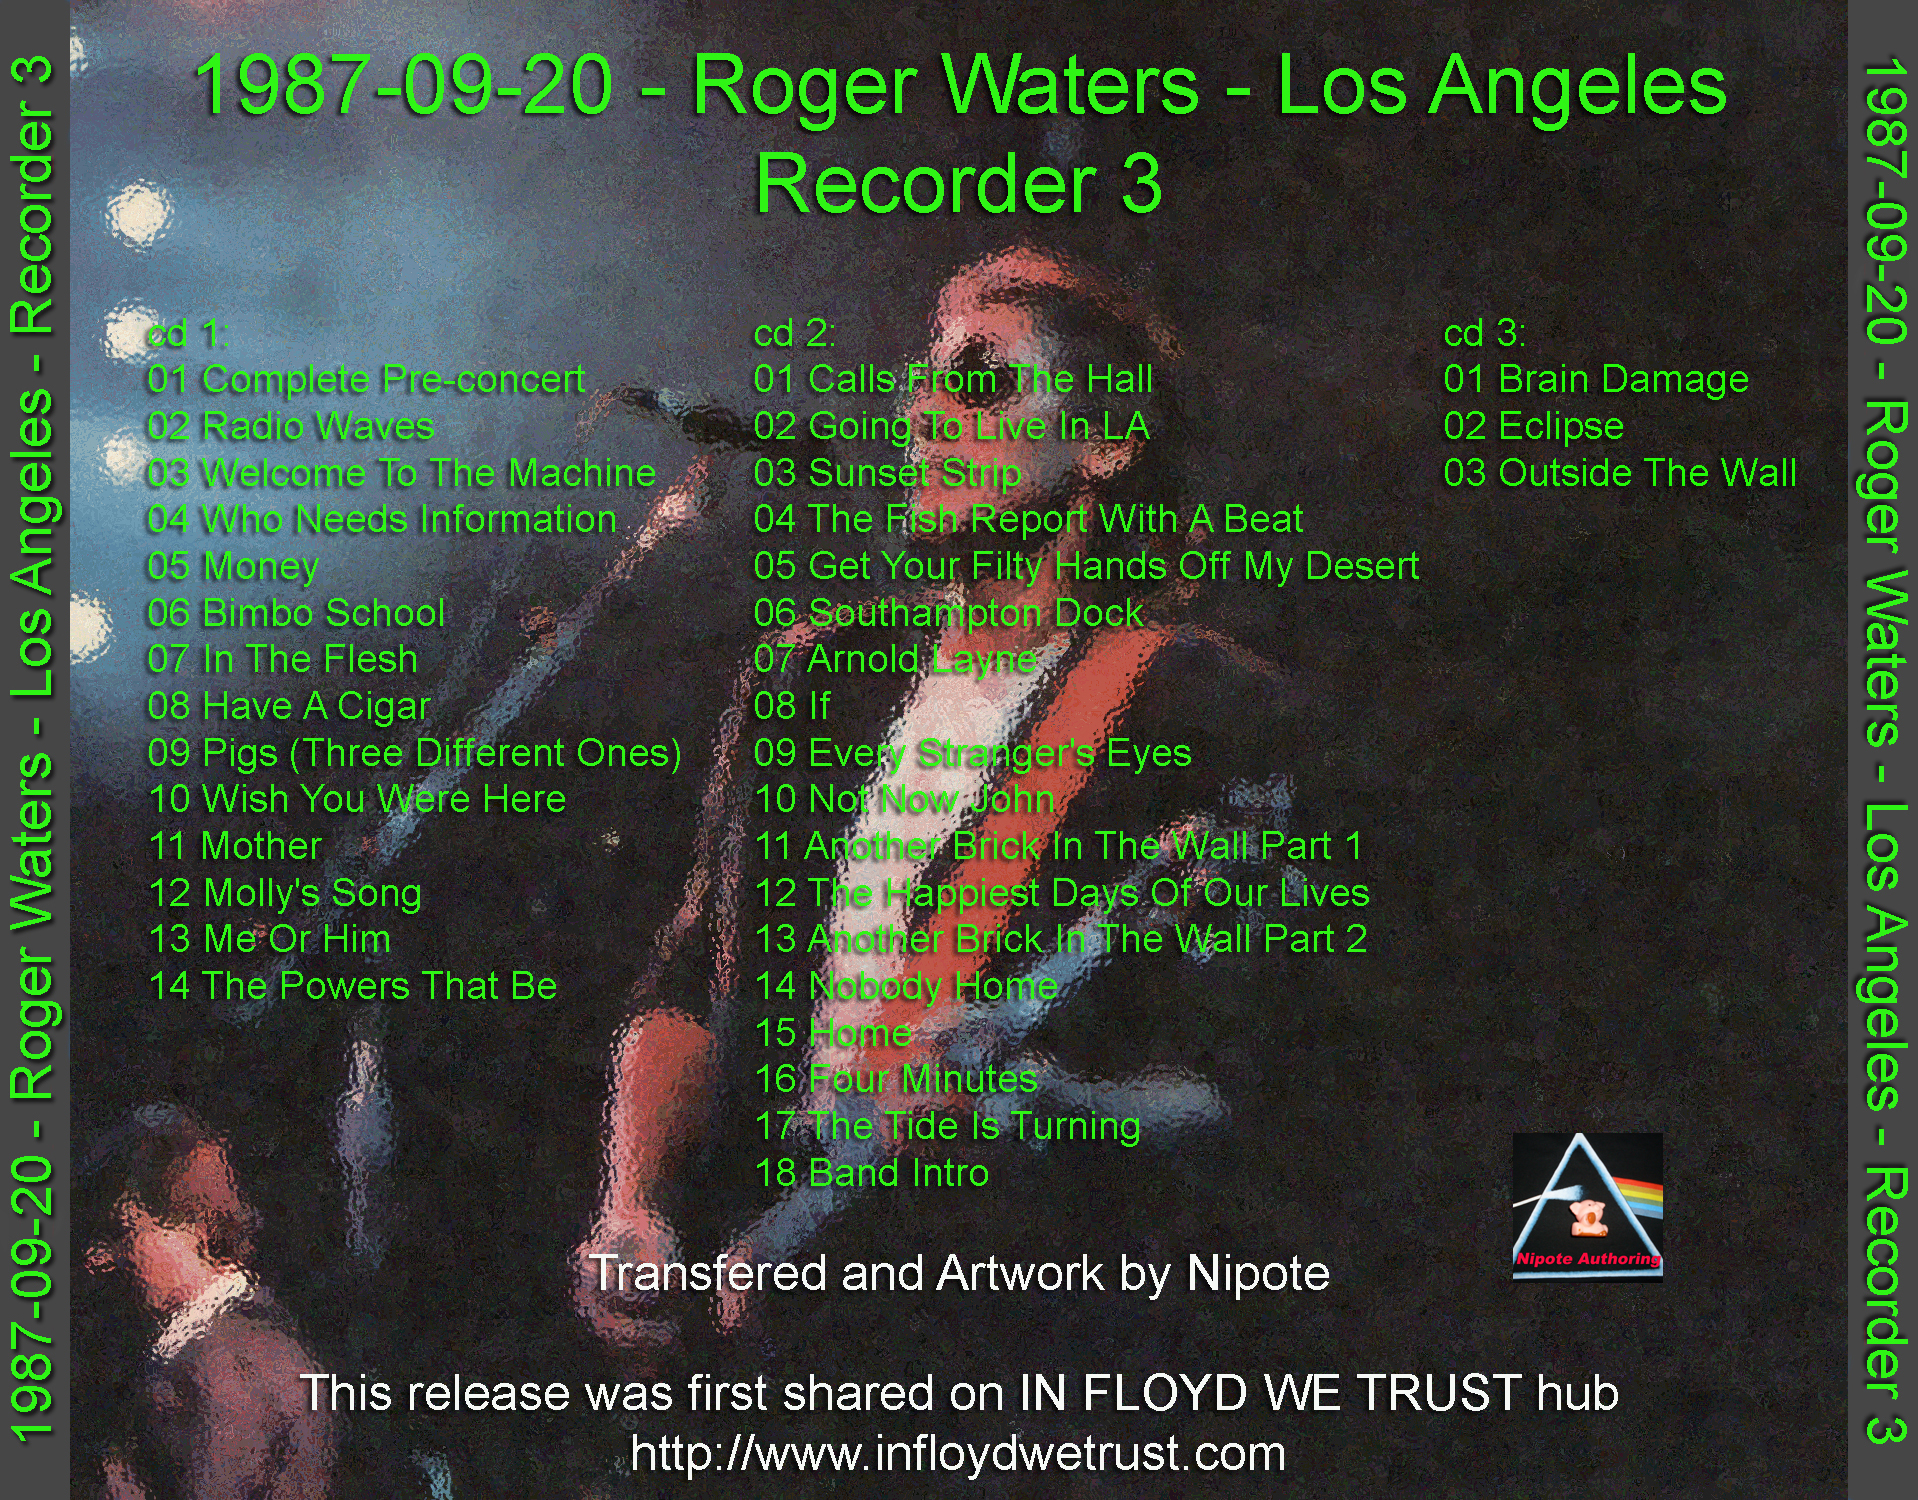 RogerWaters1987-09-20TheForumLosAngelesCA (1).jpg